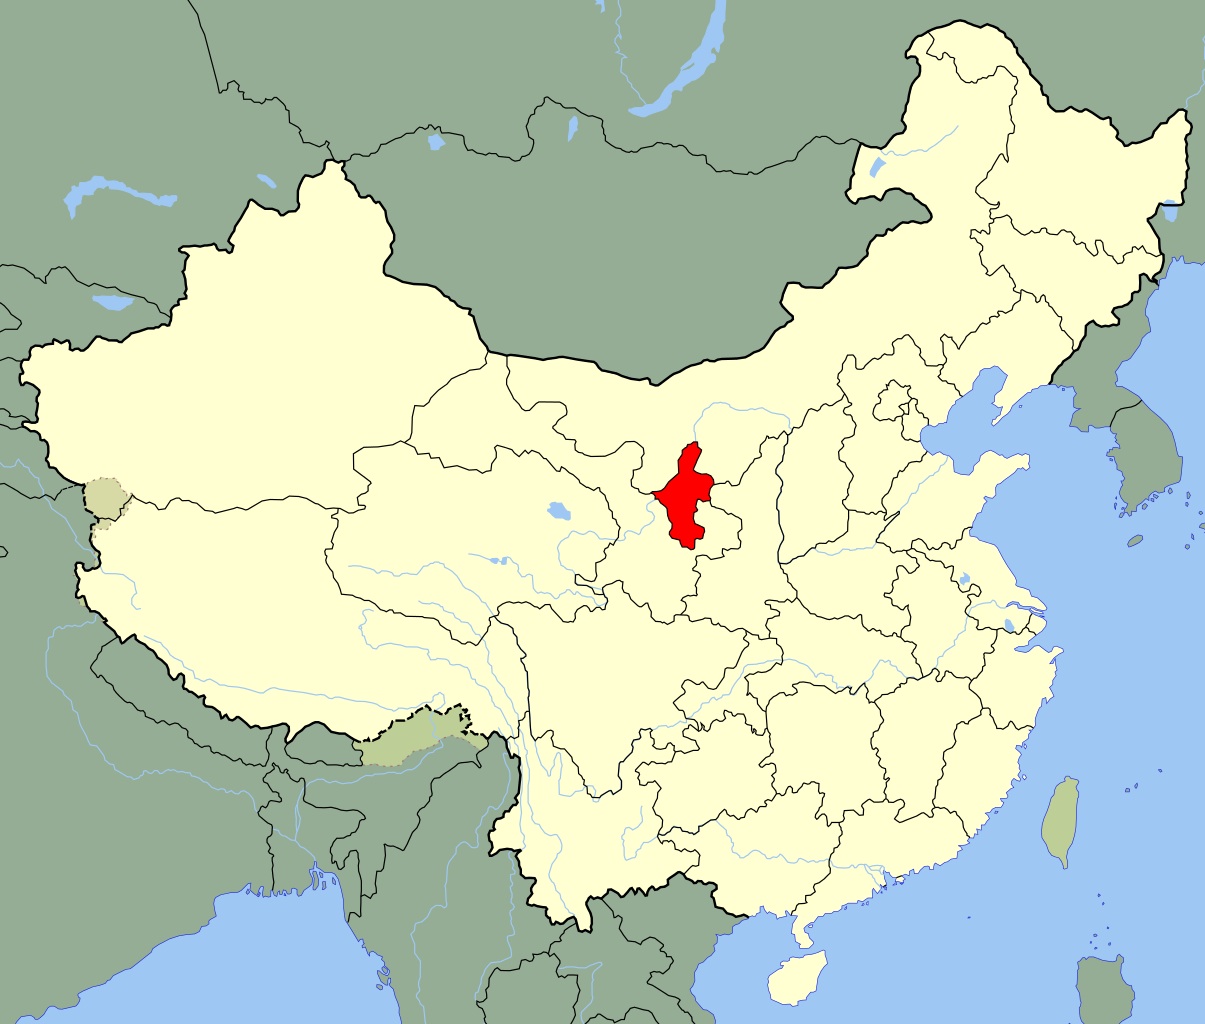 ما وراء استئناف تشغيل مصنع سوبر تسلا في شانغهاي في ظل مكافحة كوفيد-19؟